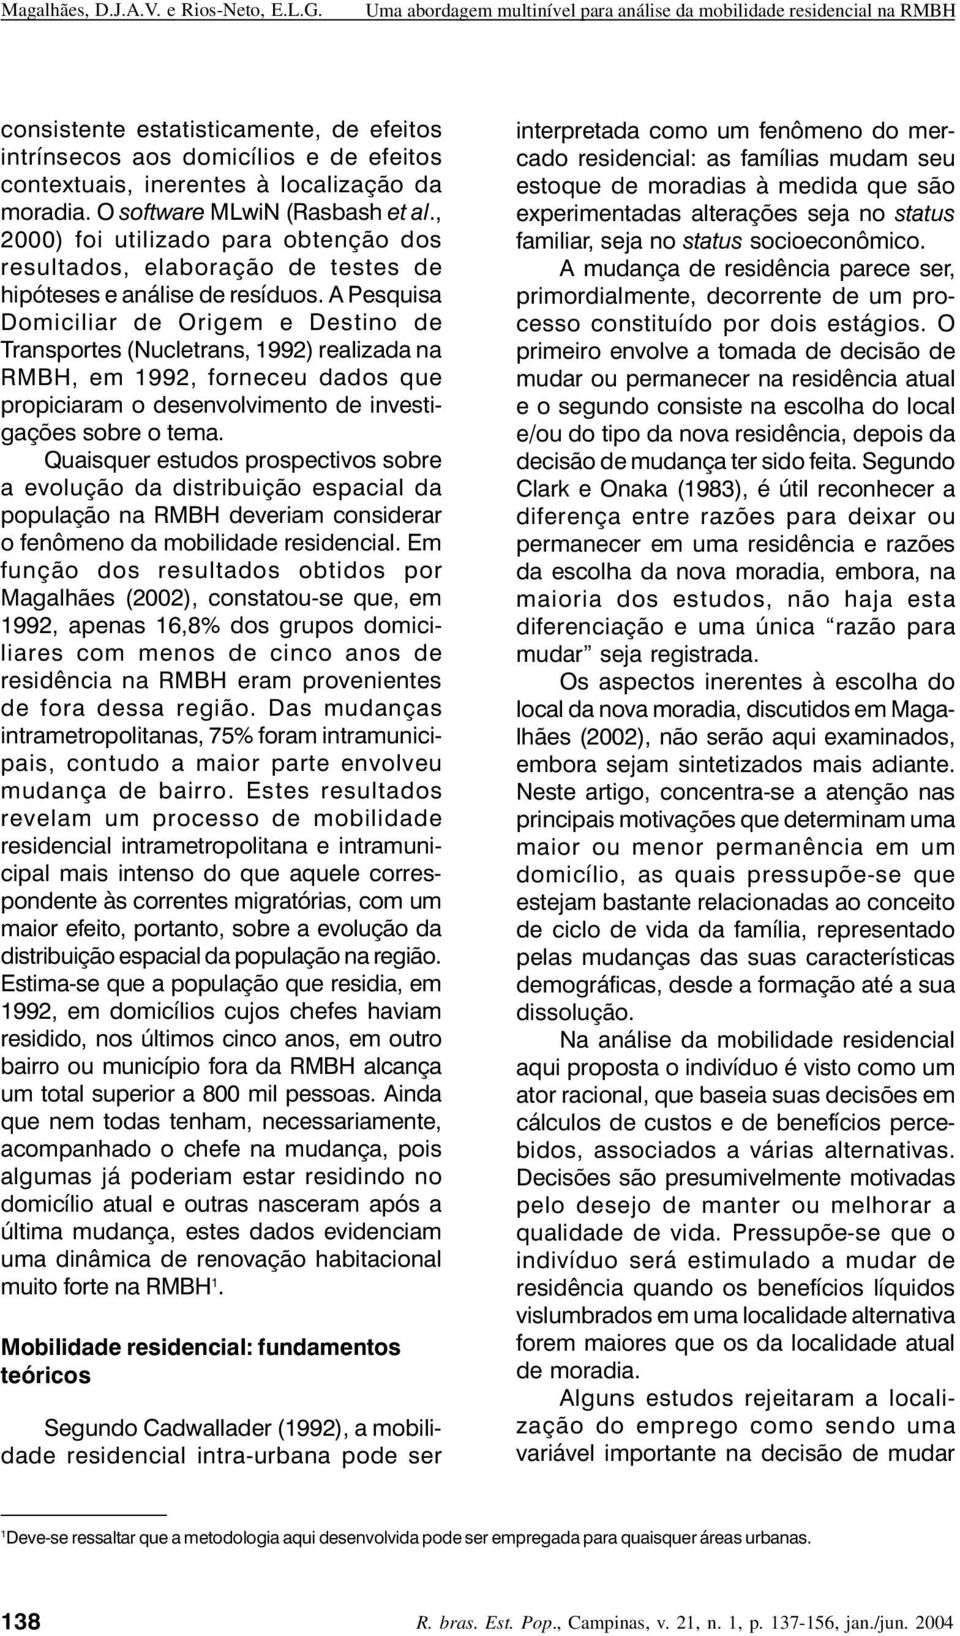 A Pesquisa Domiciliar de Origem e Destino de Transportes (Nucletrans, 1992) realizada na RMBH, em 1992, forneceu dados que propiciaram o desenvolvimento de investigações sobre o tema.